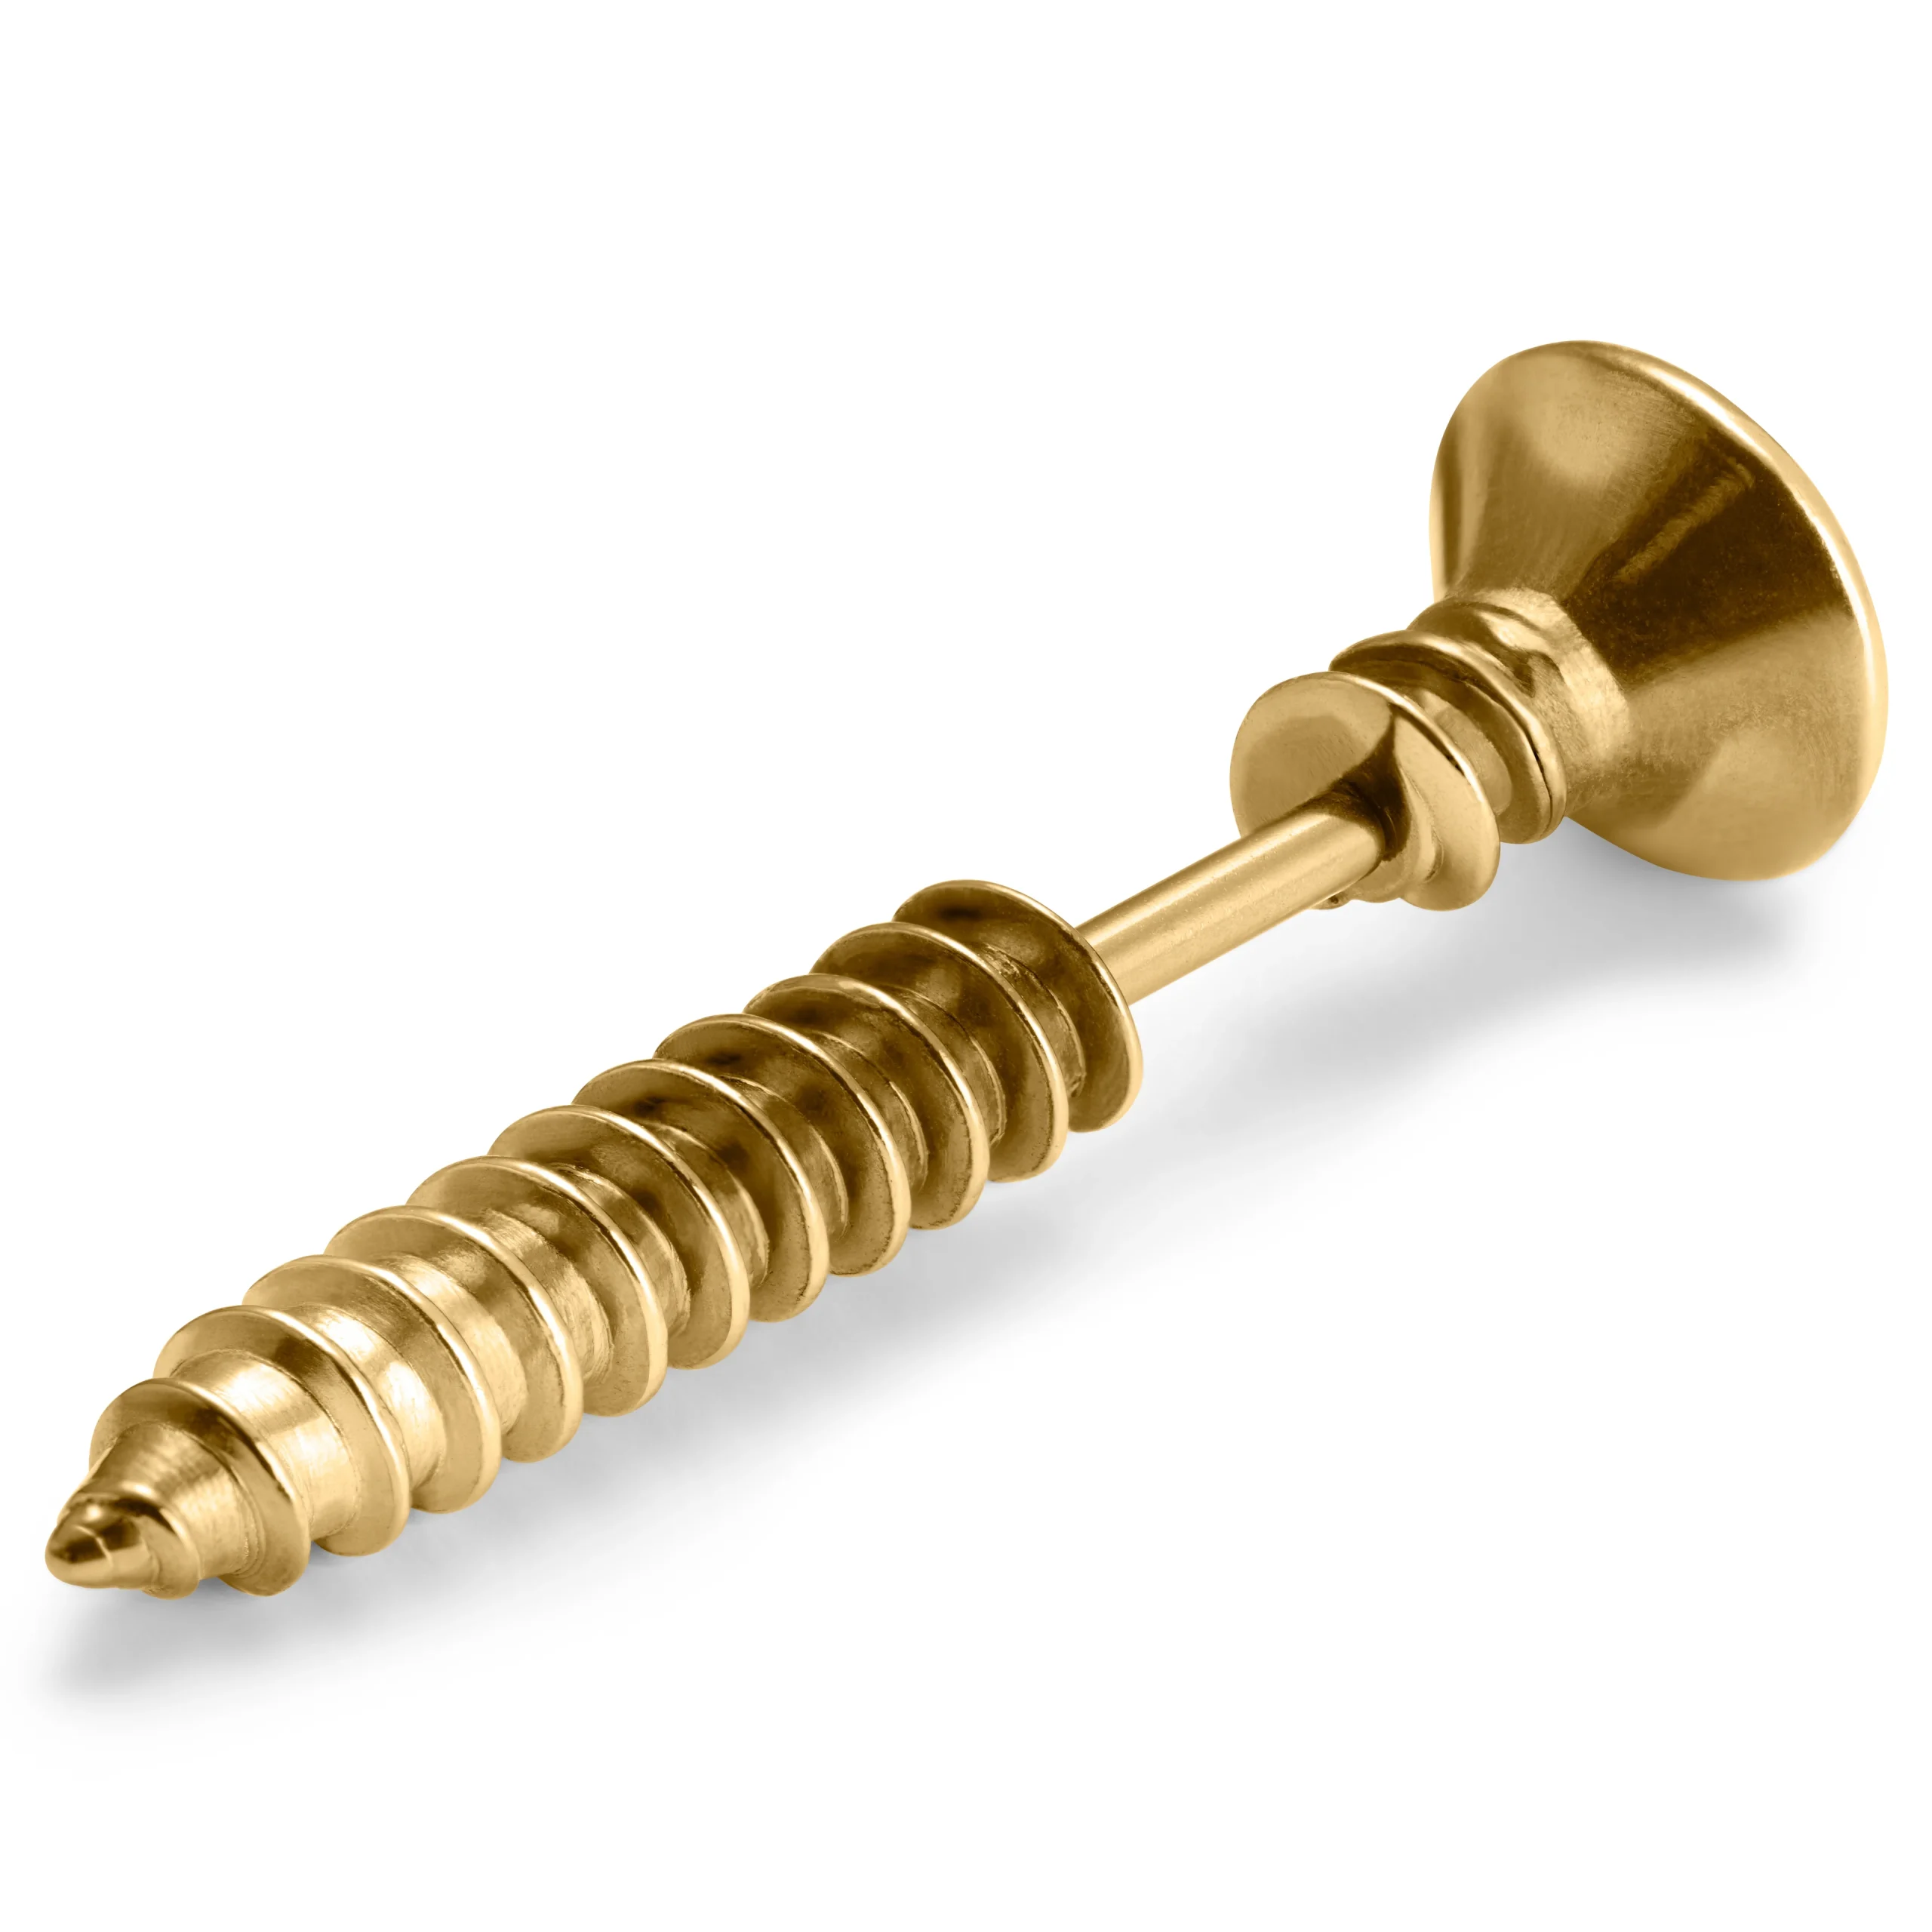 Ροκ σκουλαρίκι σε σχήμα βίδας gold